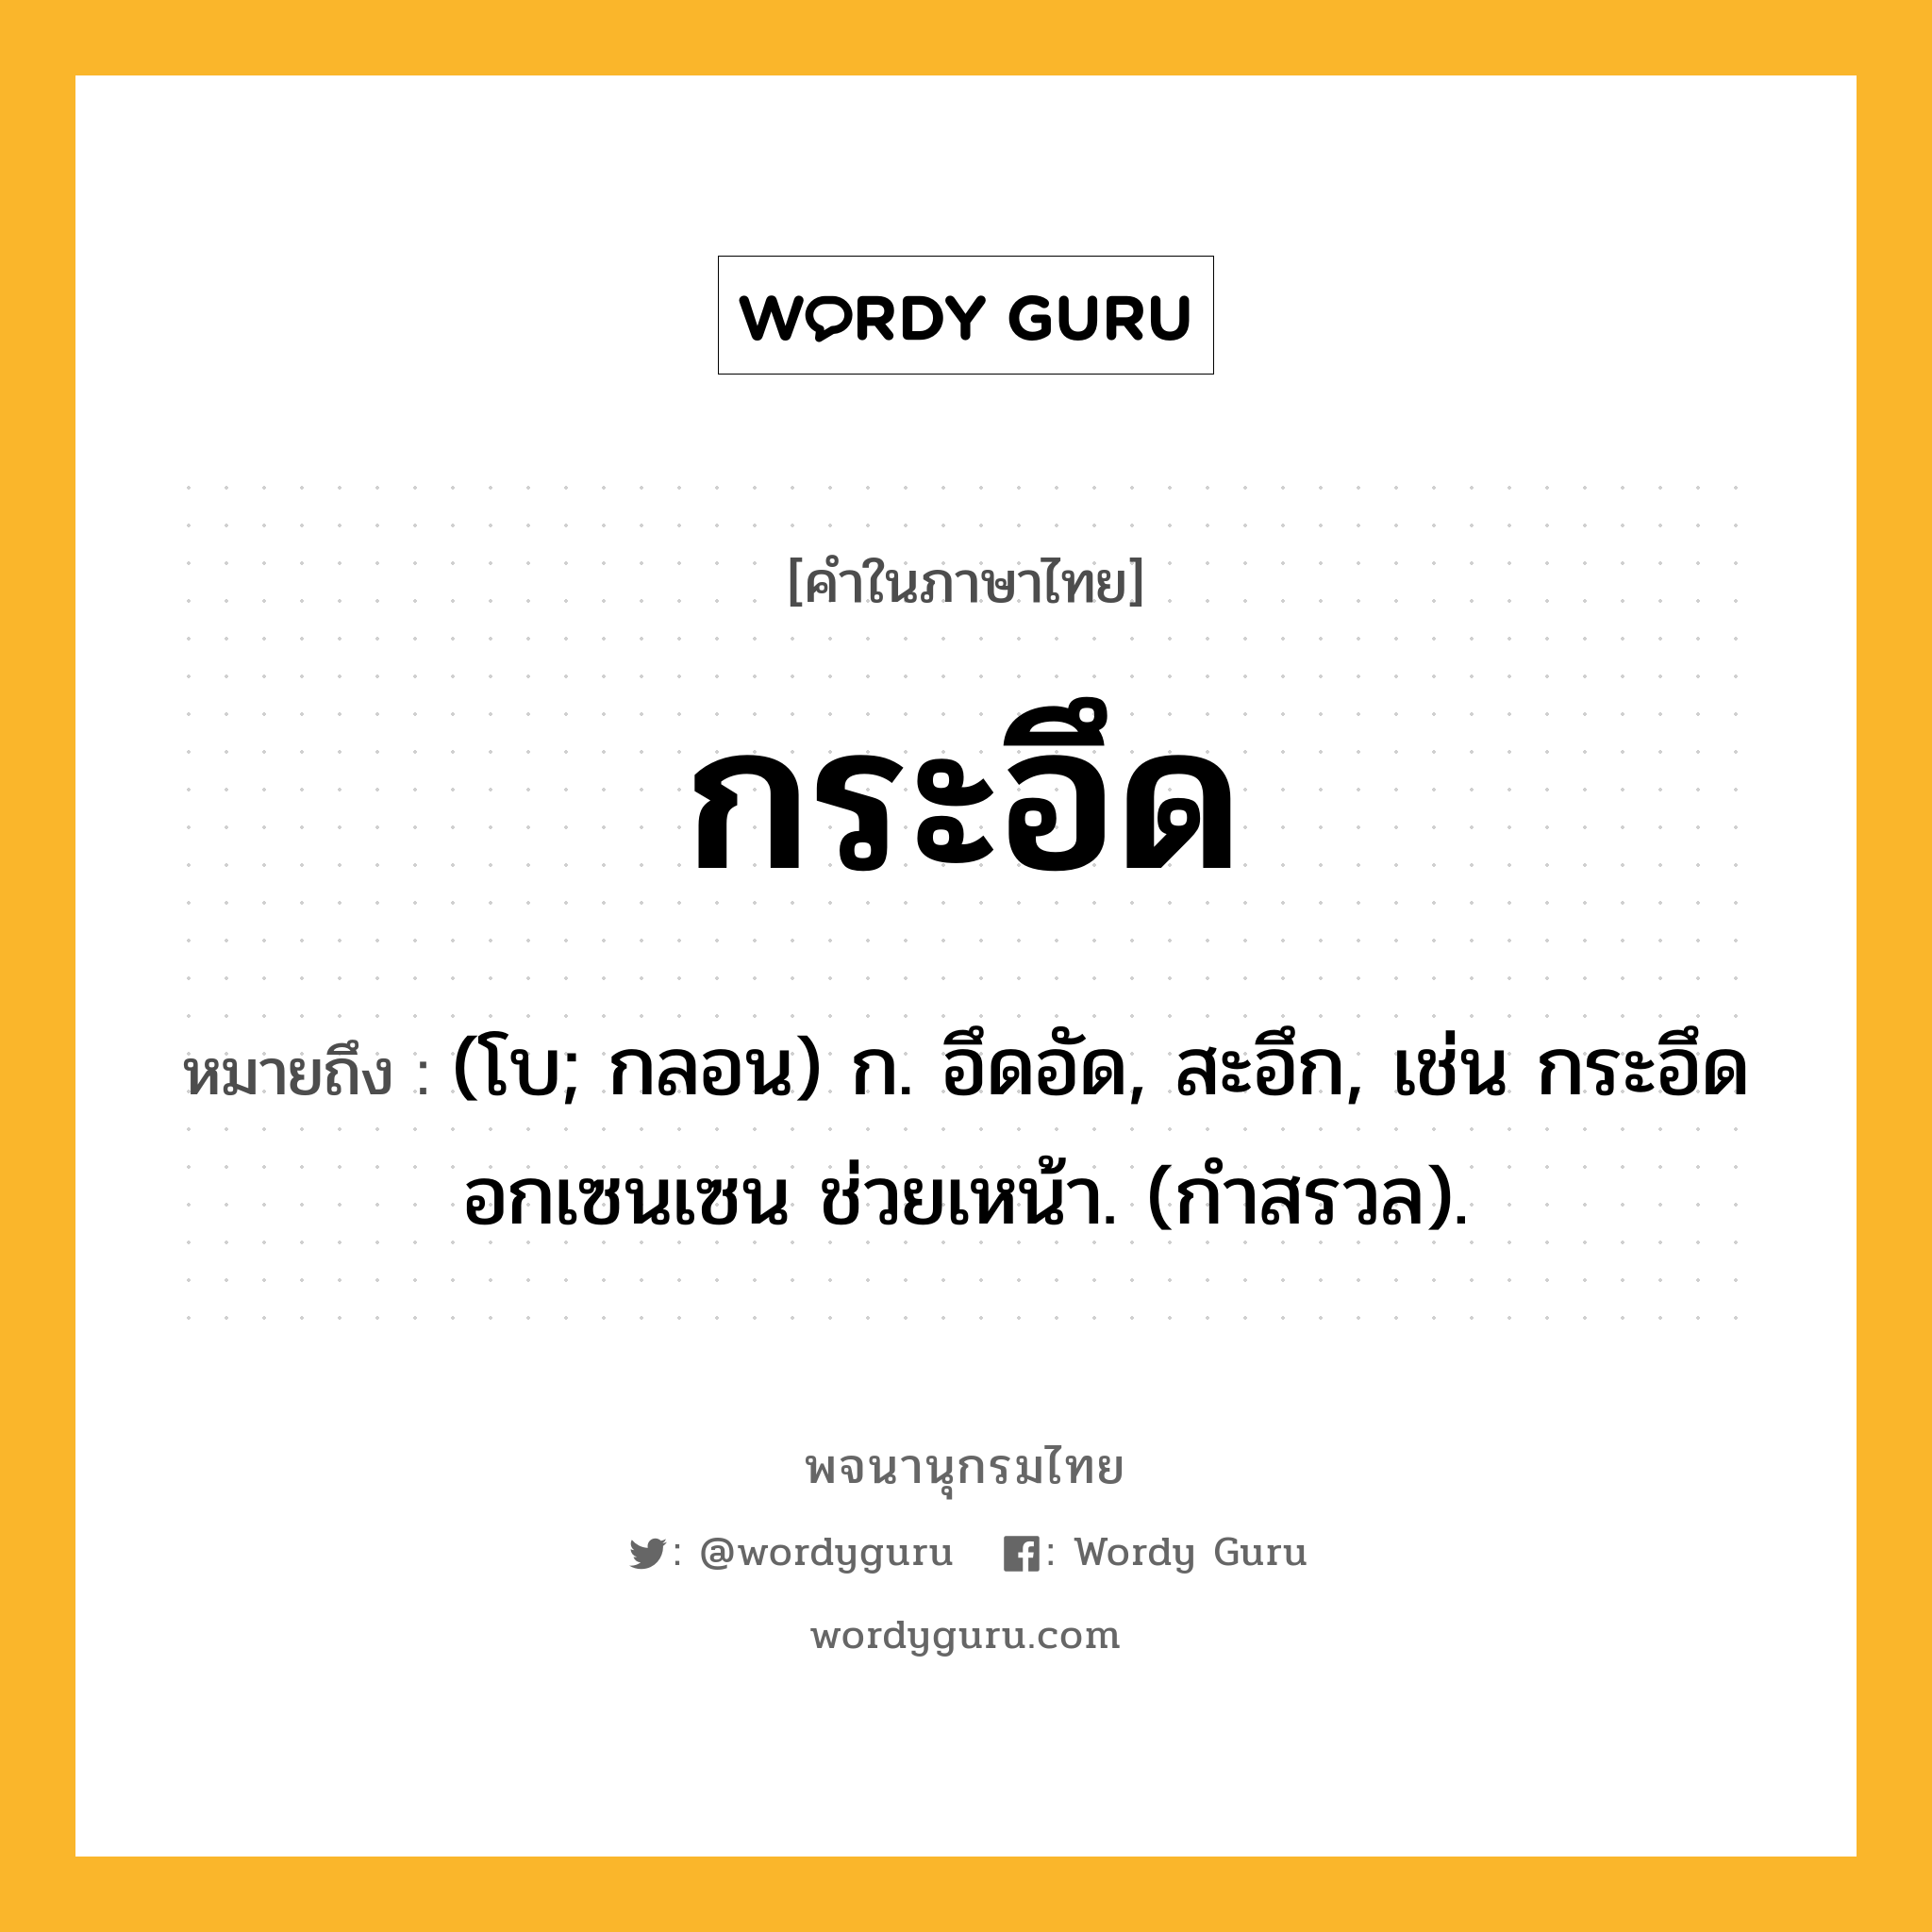 กระอึด ความหมาย หมายถึงอะไร?, คำในภาษาไทย กระอึด หมายถึง (โบ; กลอน) ก. อึดอัด, สะอึก, เช่น กระอึดอกเซนเซน ช่วยเหน้า. (กําสรวล).